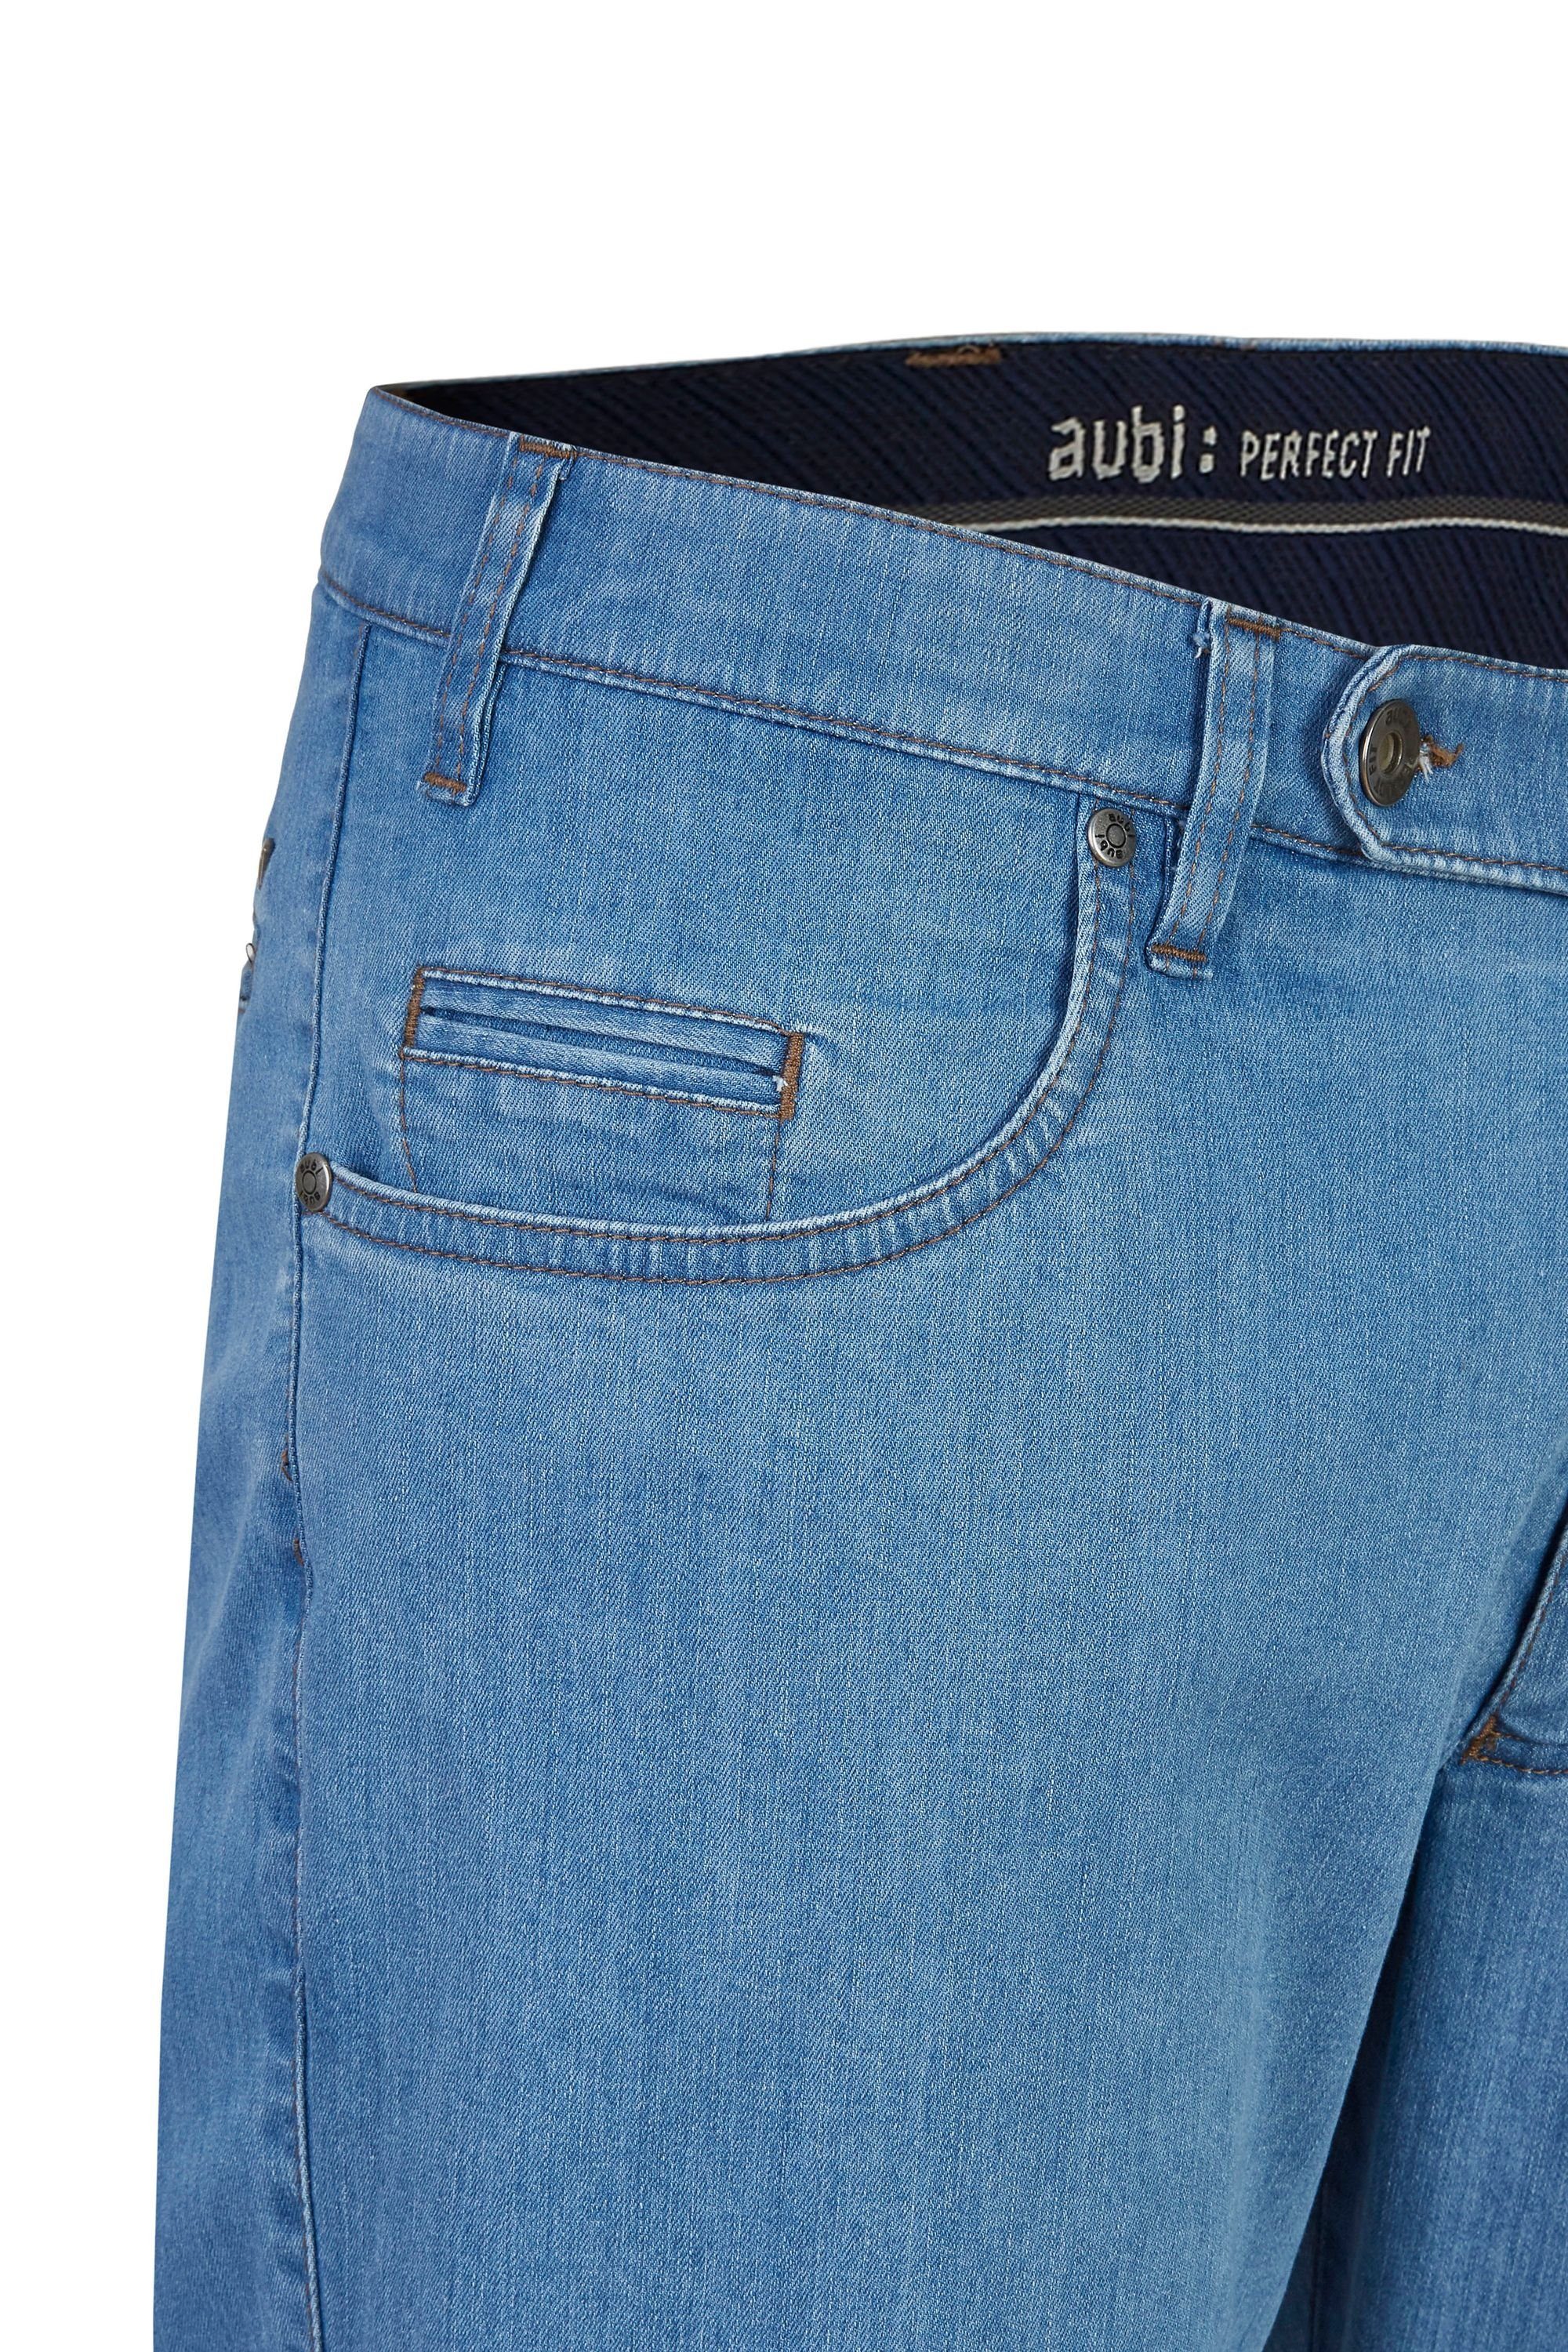 Bequeme Jeans Stretch aus (43) aubi Herren aubi: bleached Perfect Modell Jeans Hose Fit High Sommer Flex Baumwolle 577